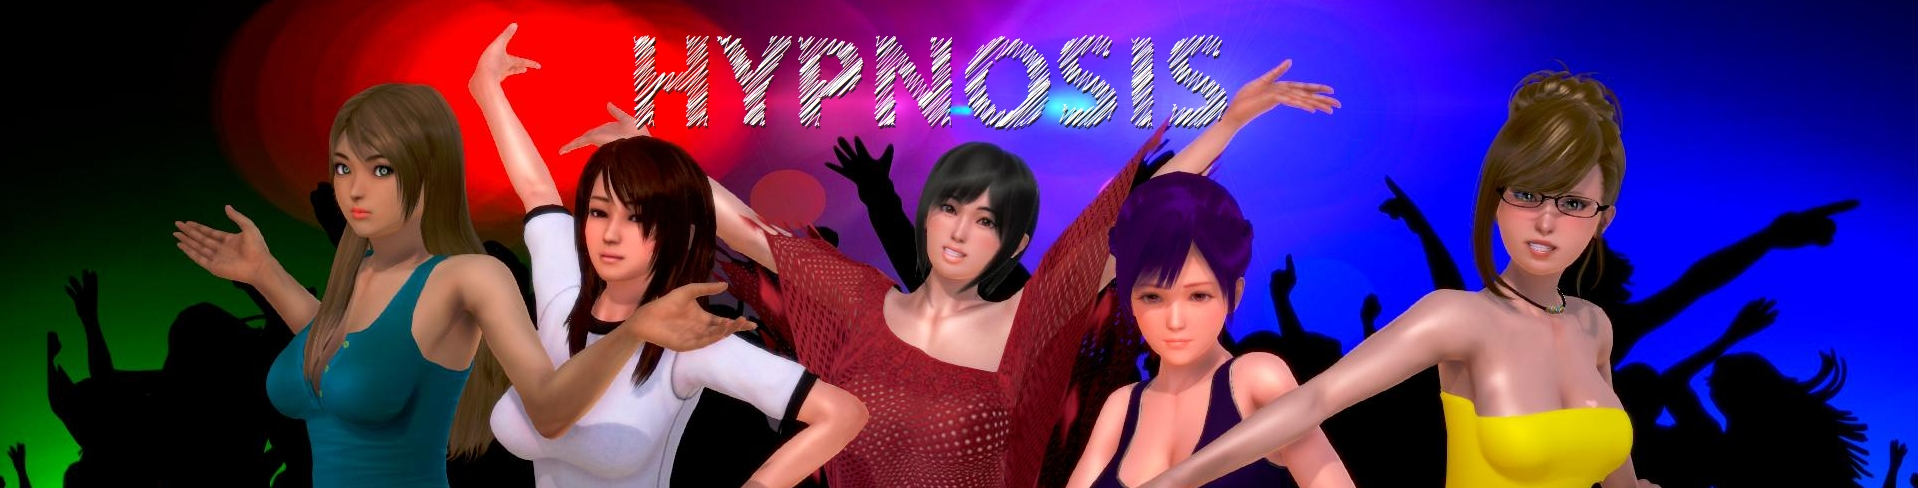 Hypnosis main image